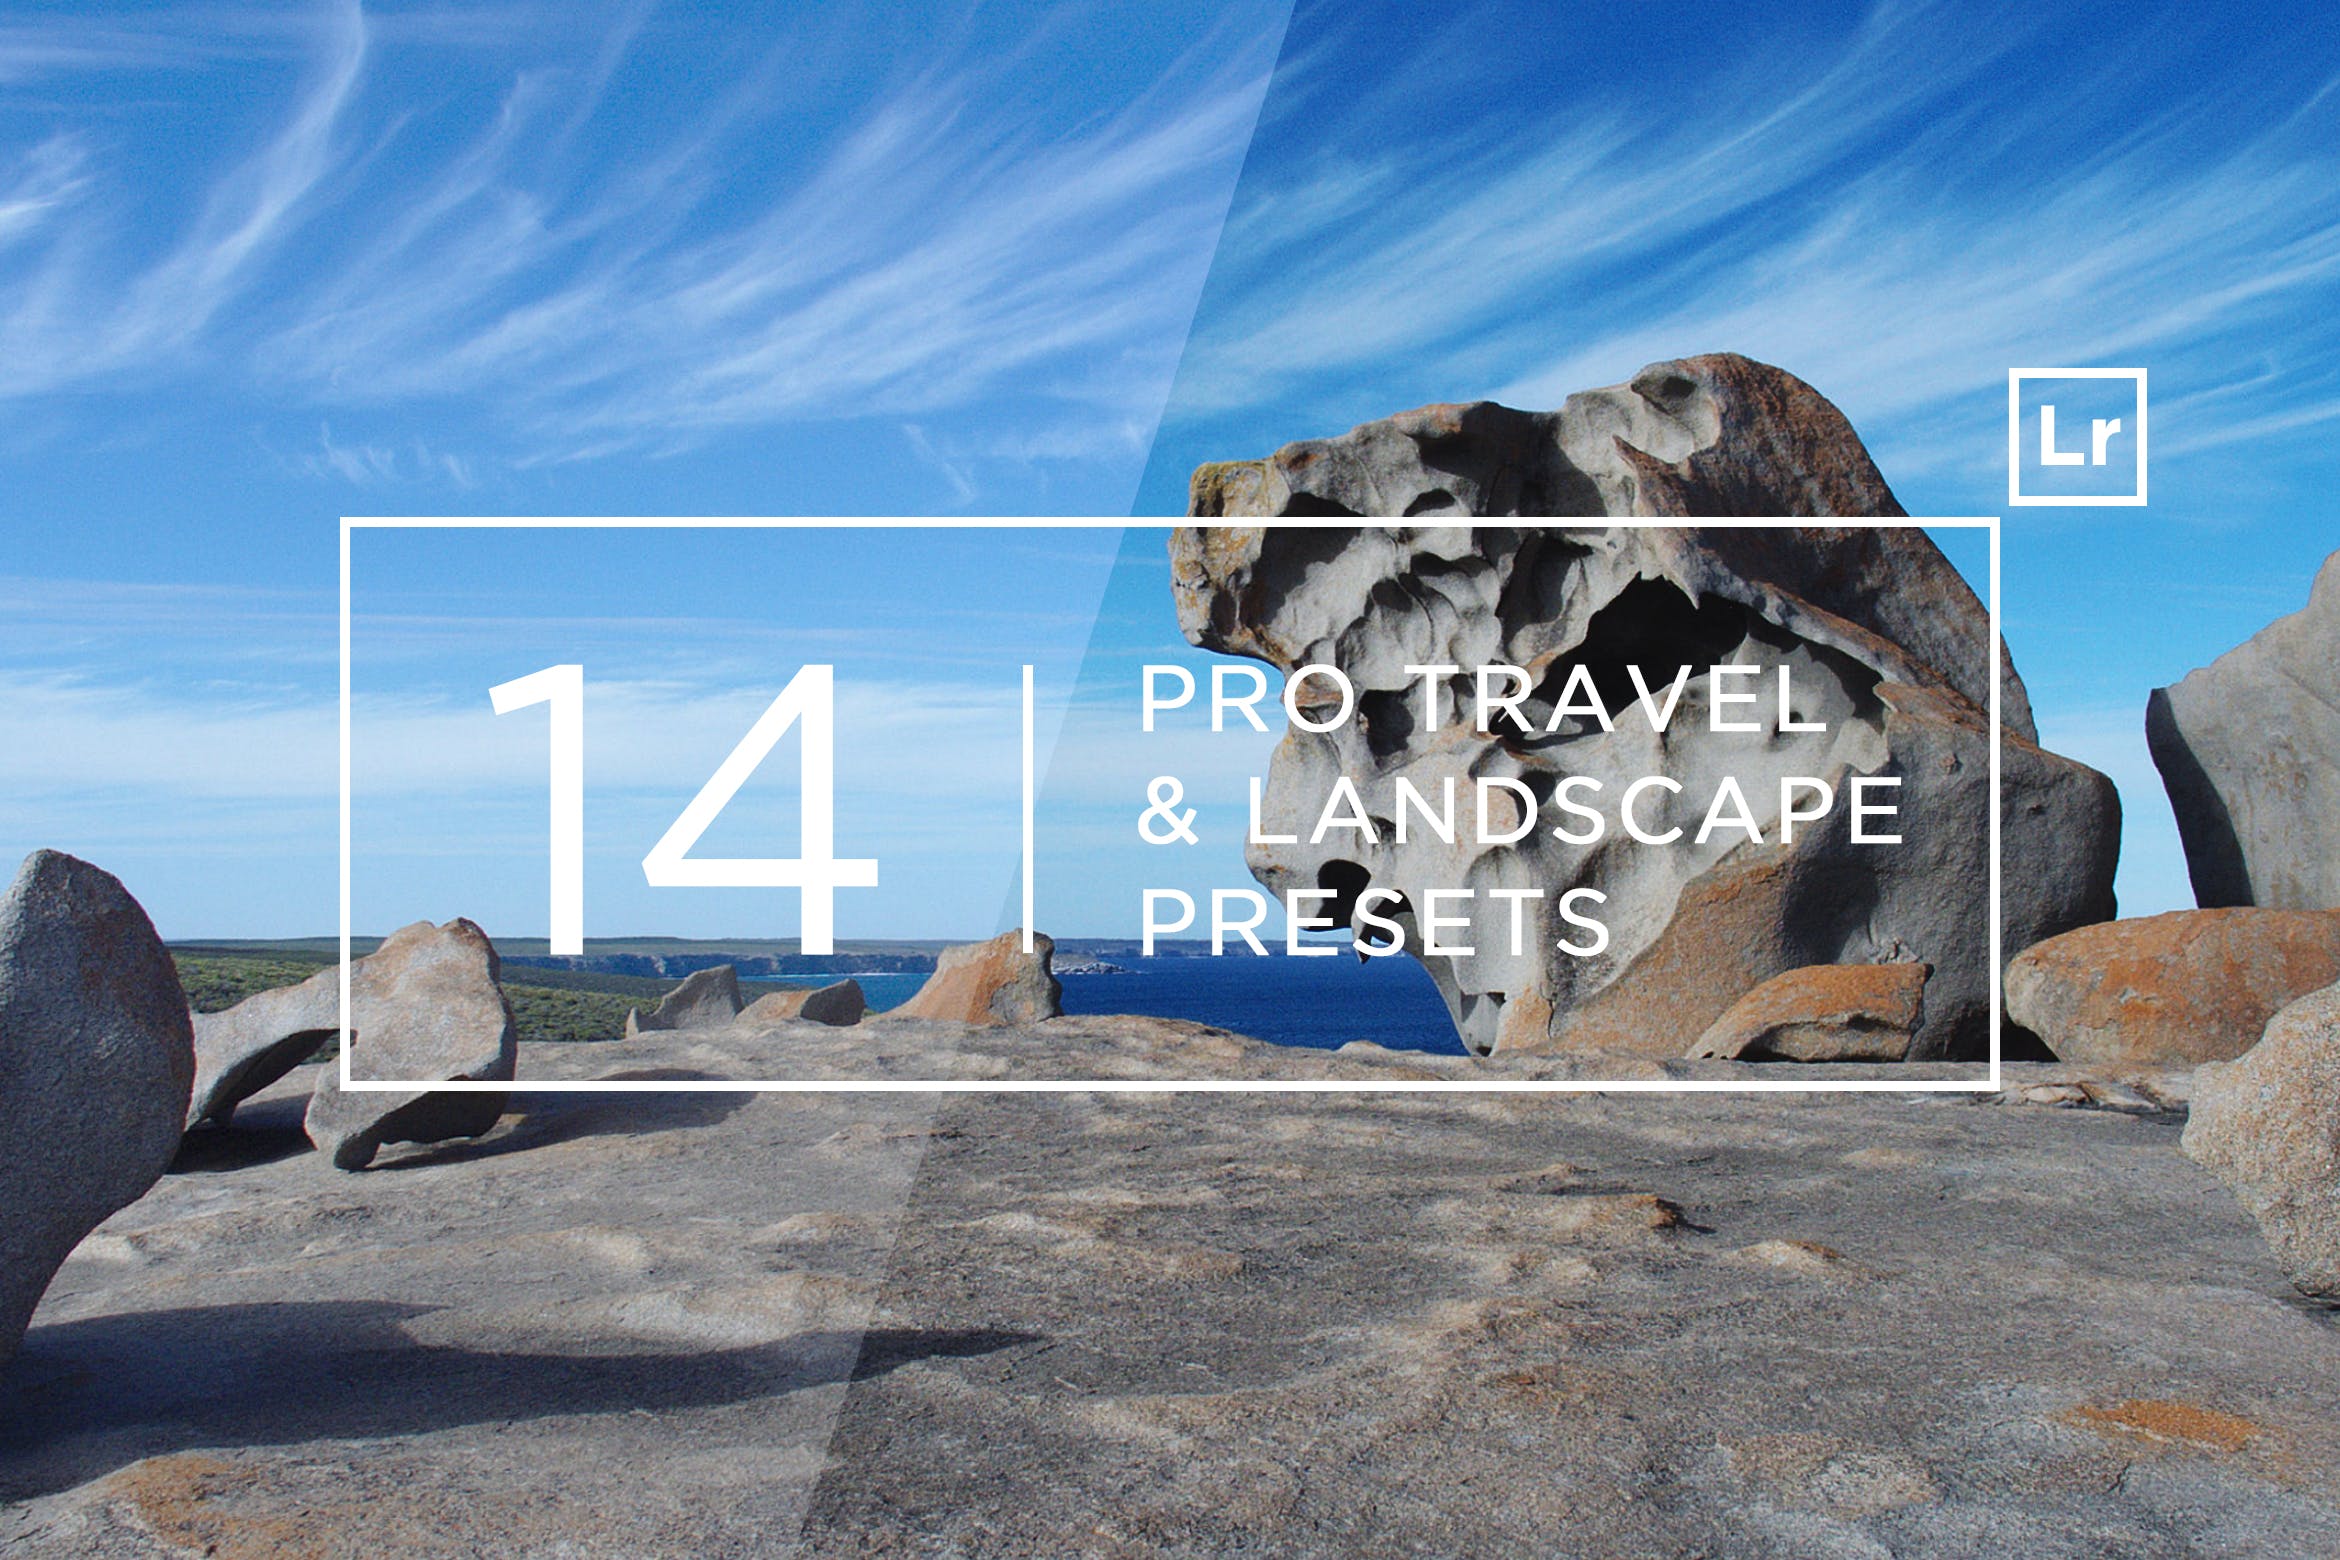 14款专业旅行&风景照片滤镜第一素材精选LR预设 14 Pro Travel & Landscape Lightroom Presets插图